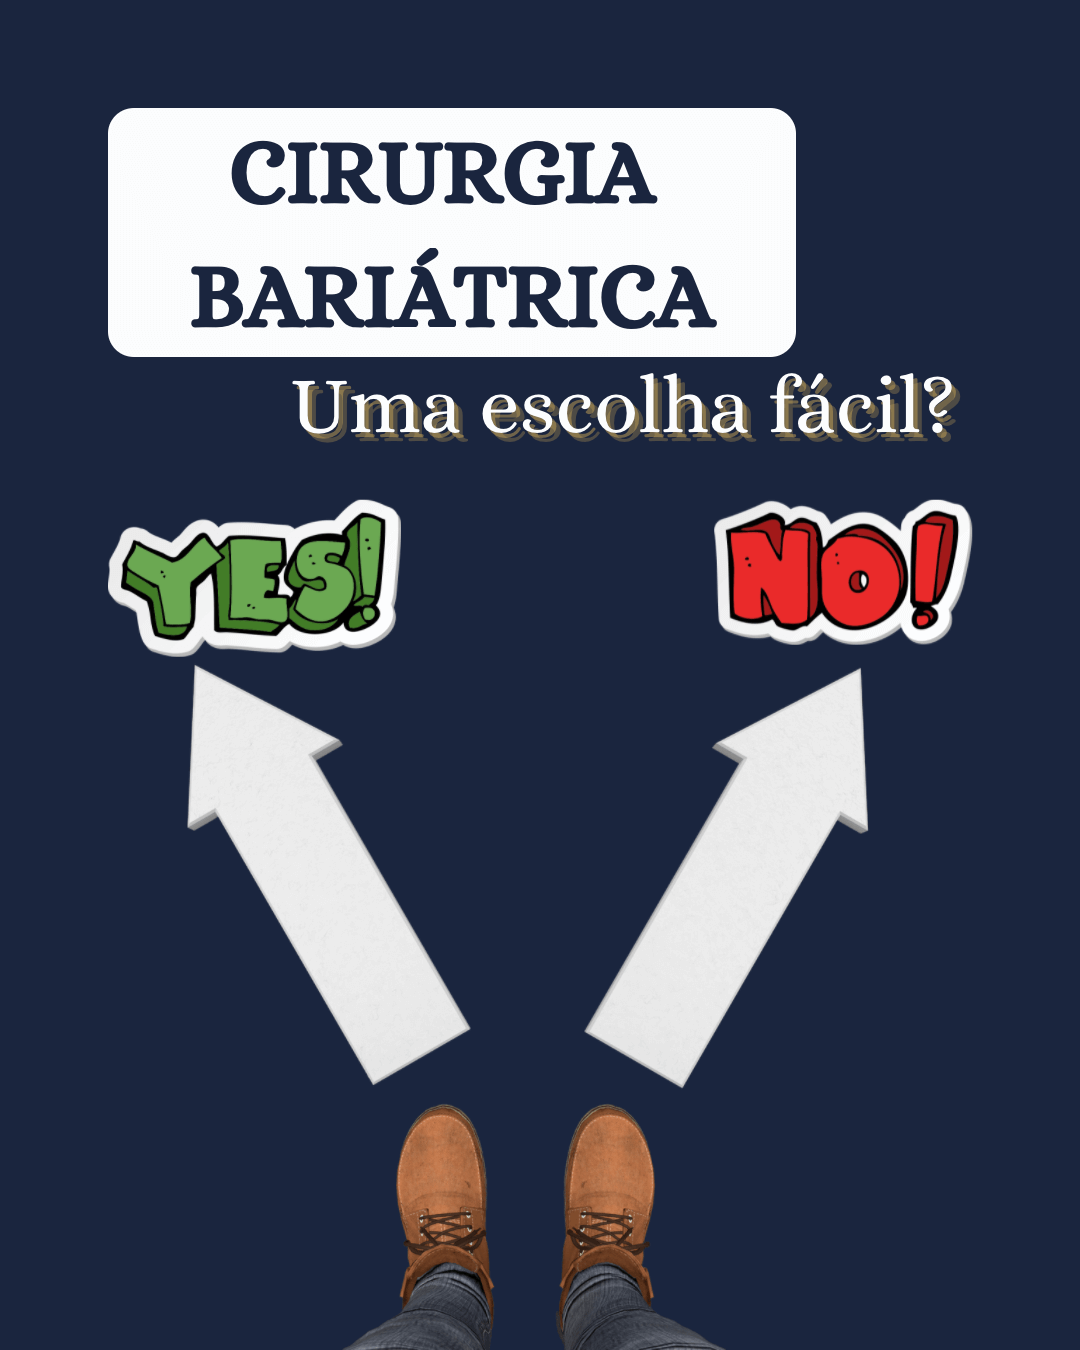 CIRURGIA BARIÁTRICA É UMA DECISÃO FÁCIL?